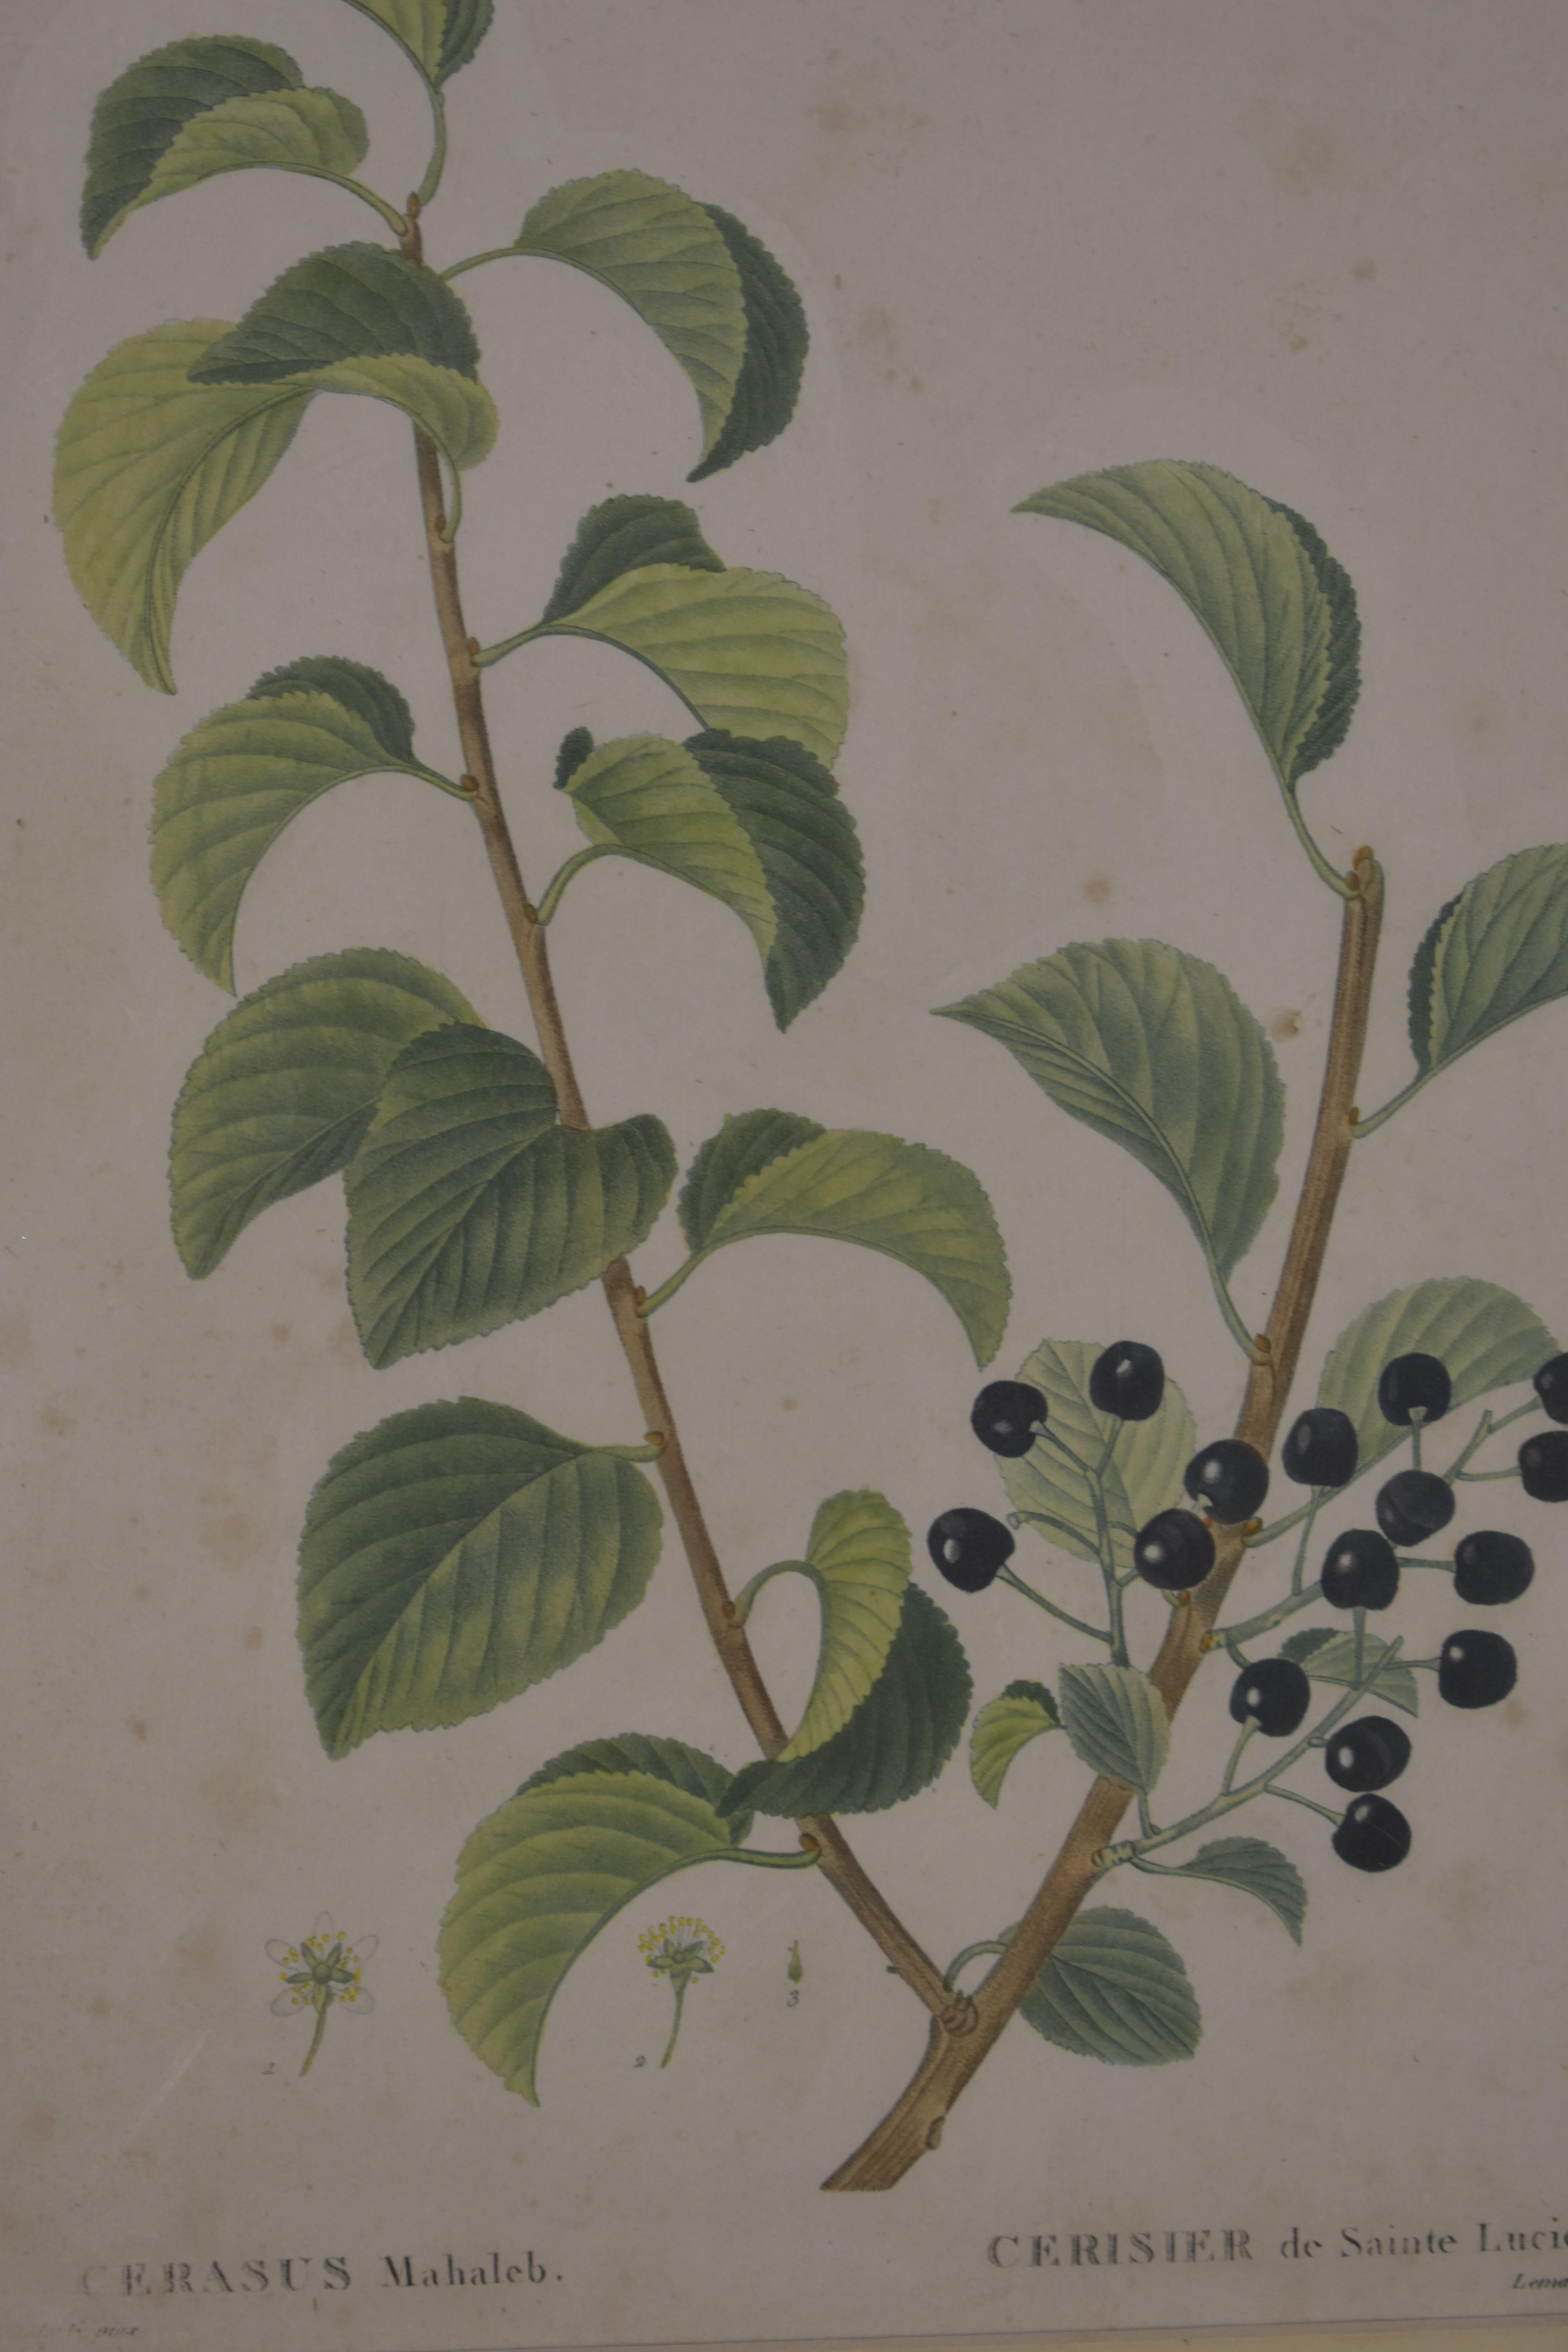 Botanicaler Druck von Redoute, 18. Jahrhundert – Print von Pierre Joseph Redoute